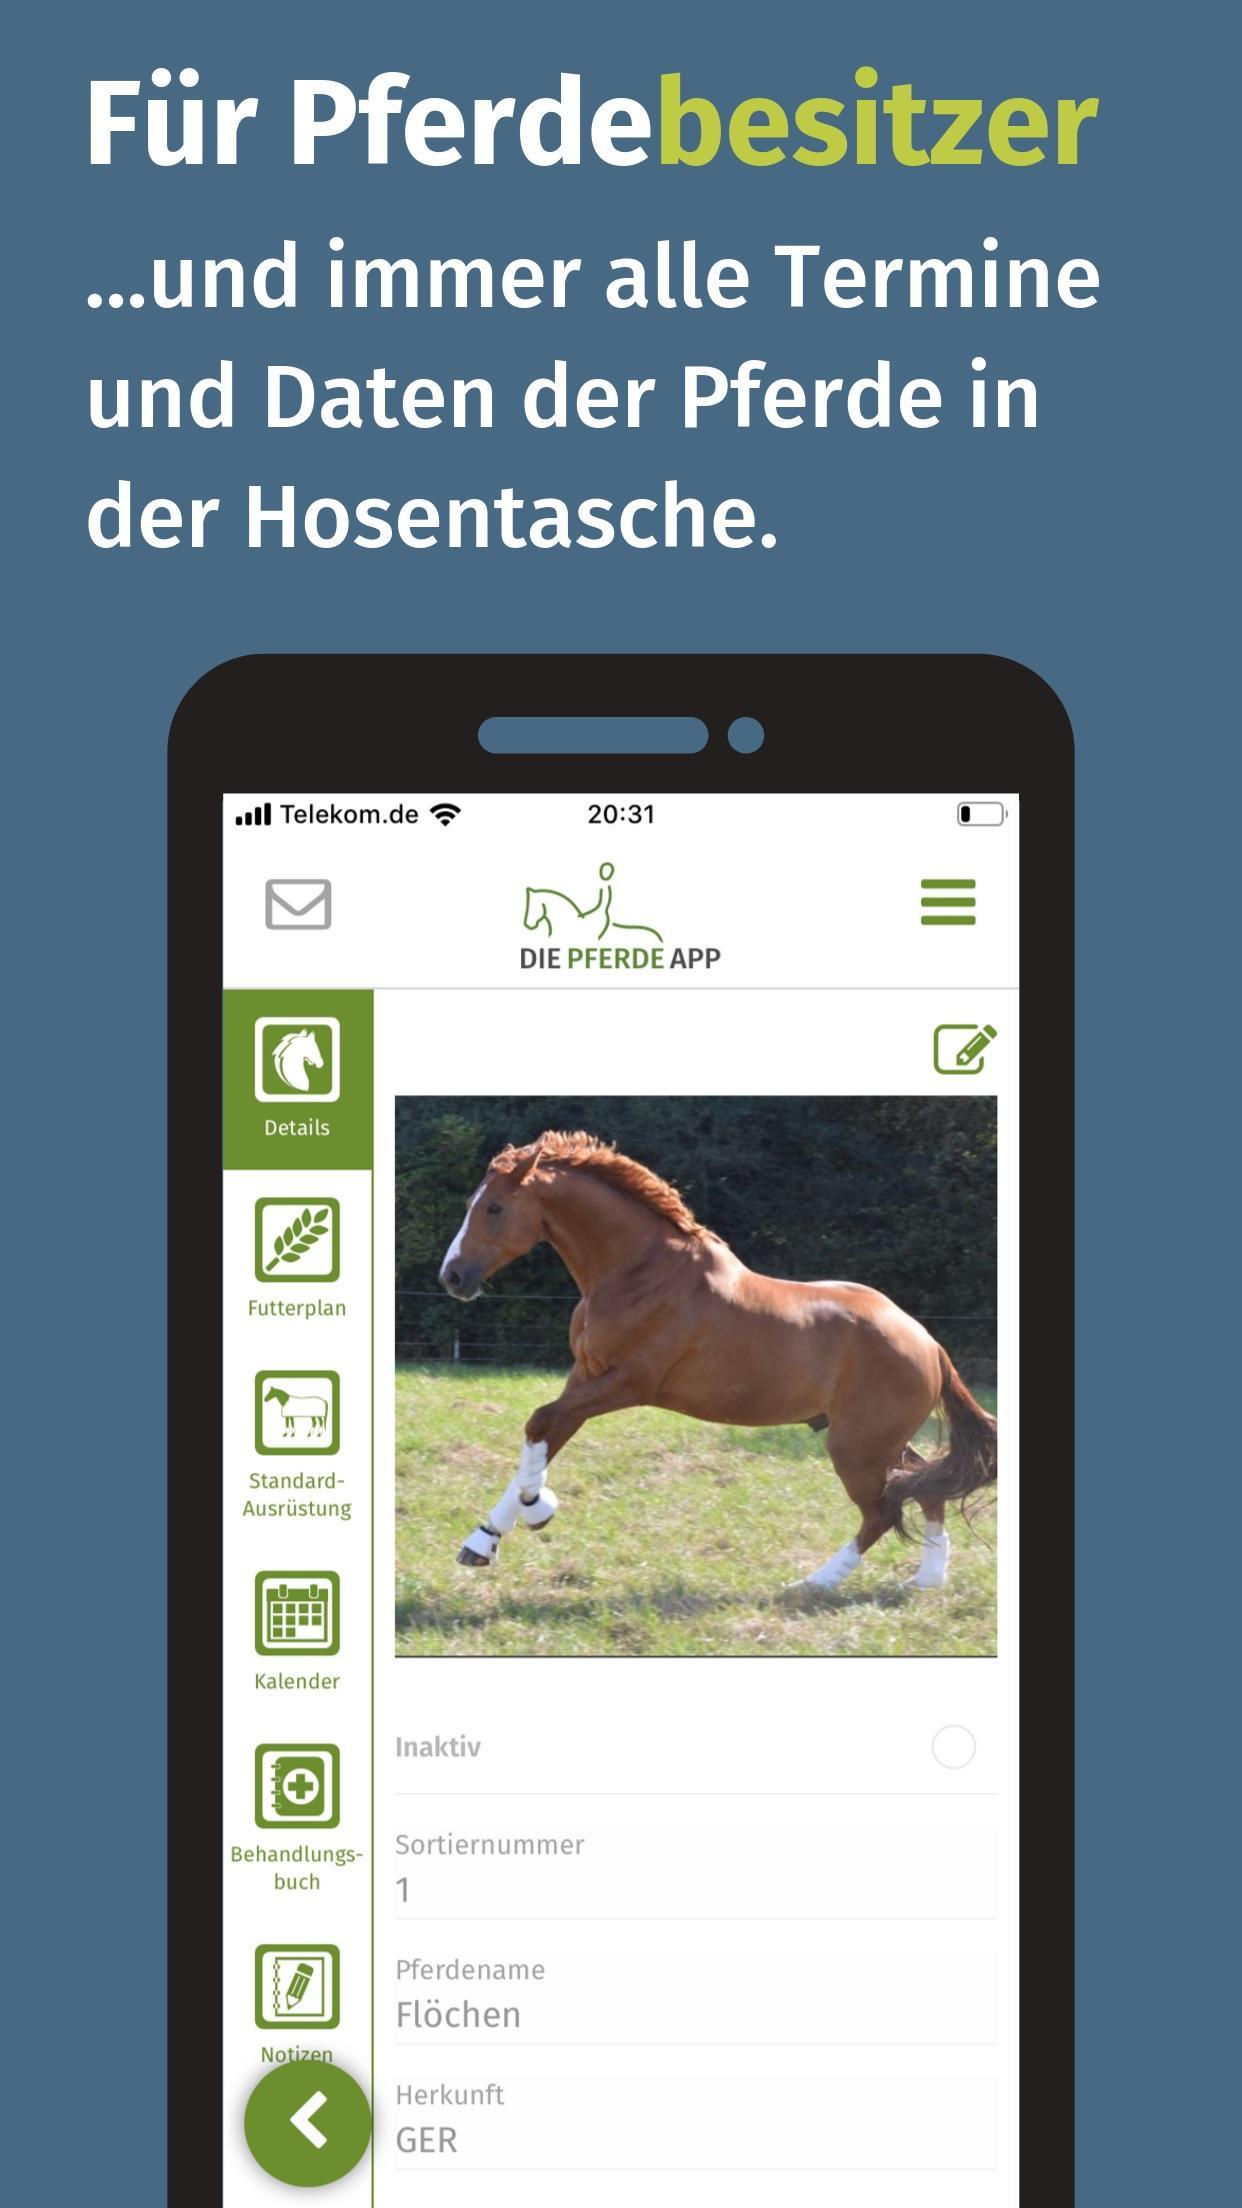 Die Pferde App 4.1.2 Screenshot 2